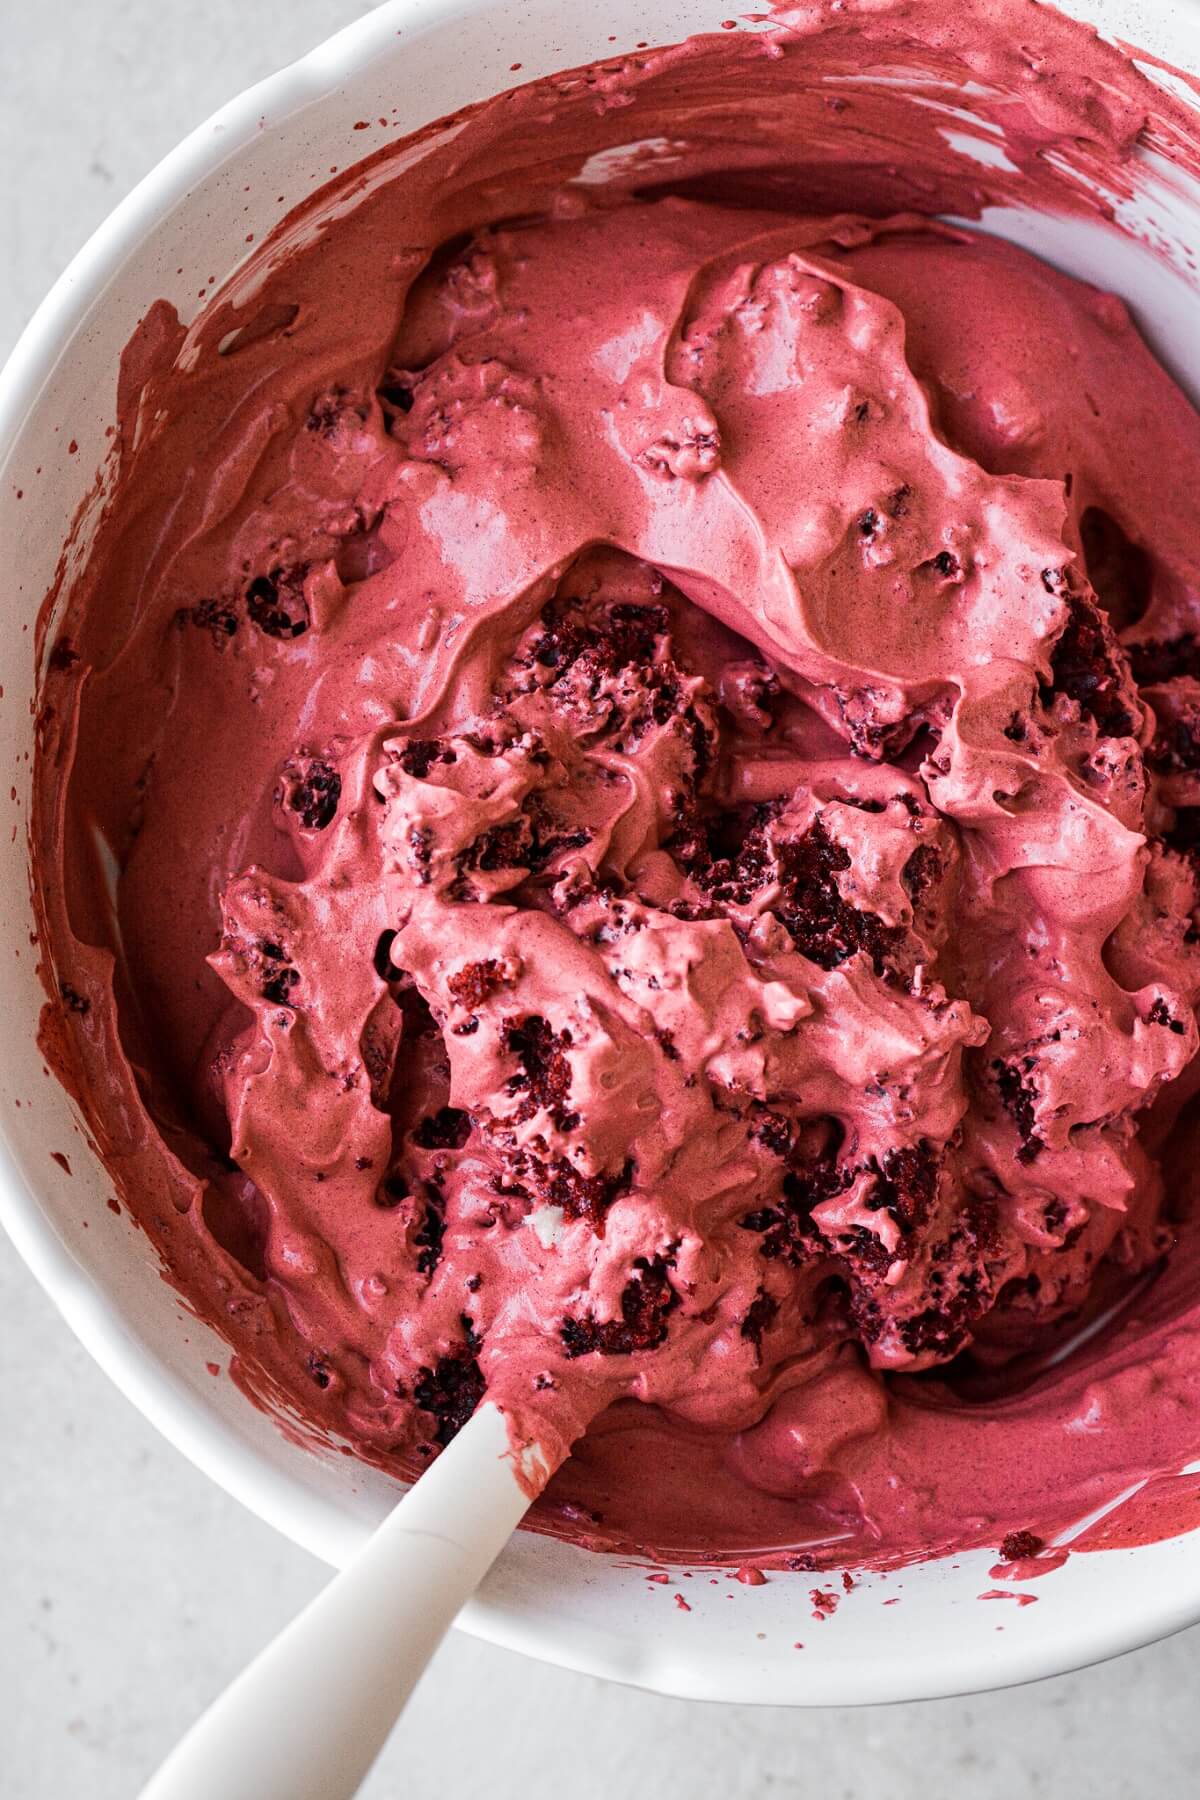 Step 8 for making red velvet ice cream.